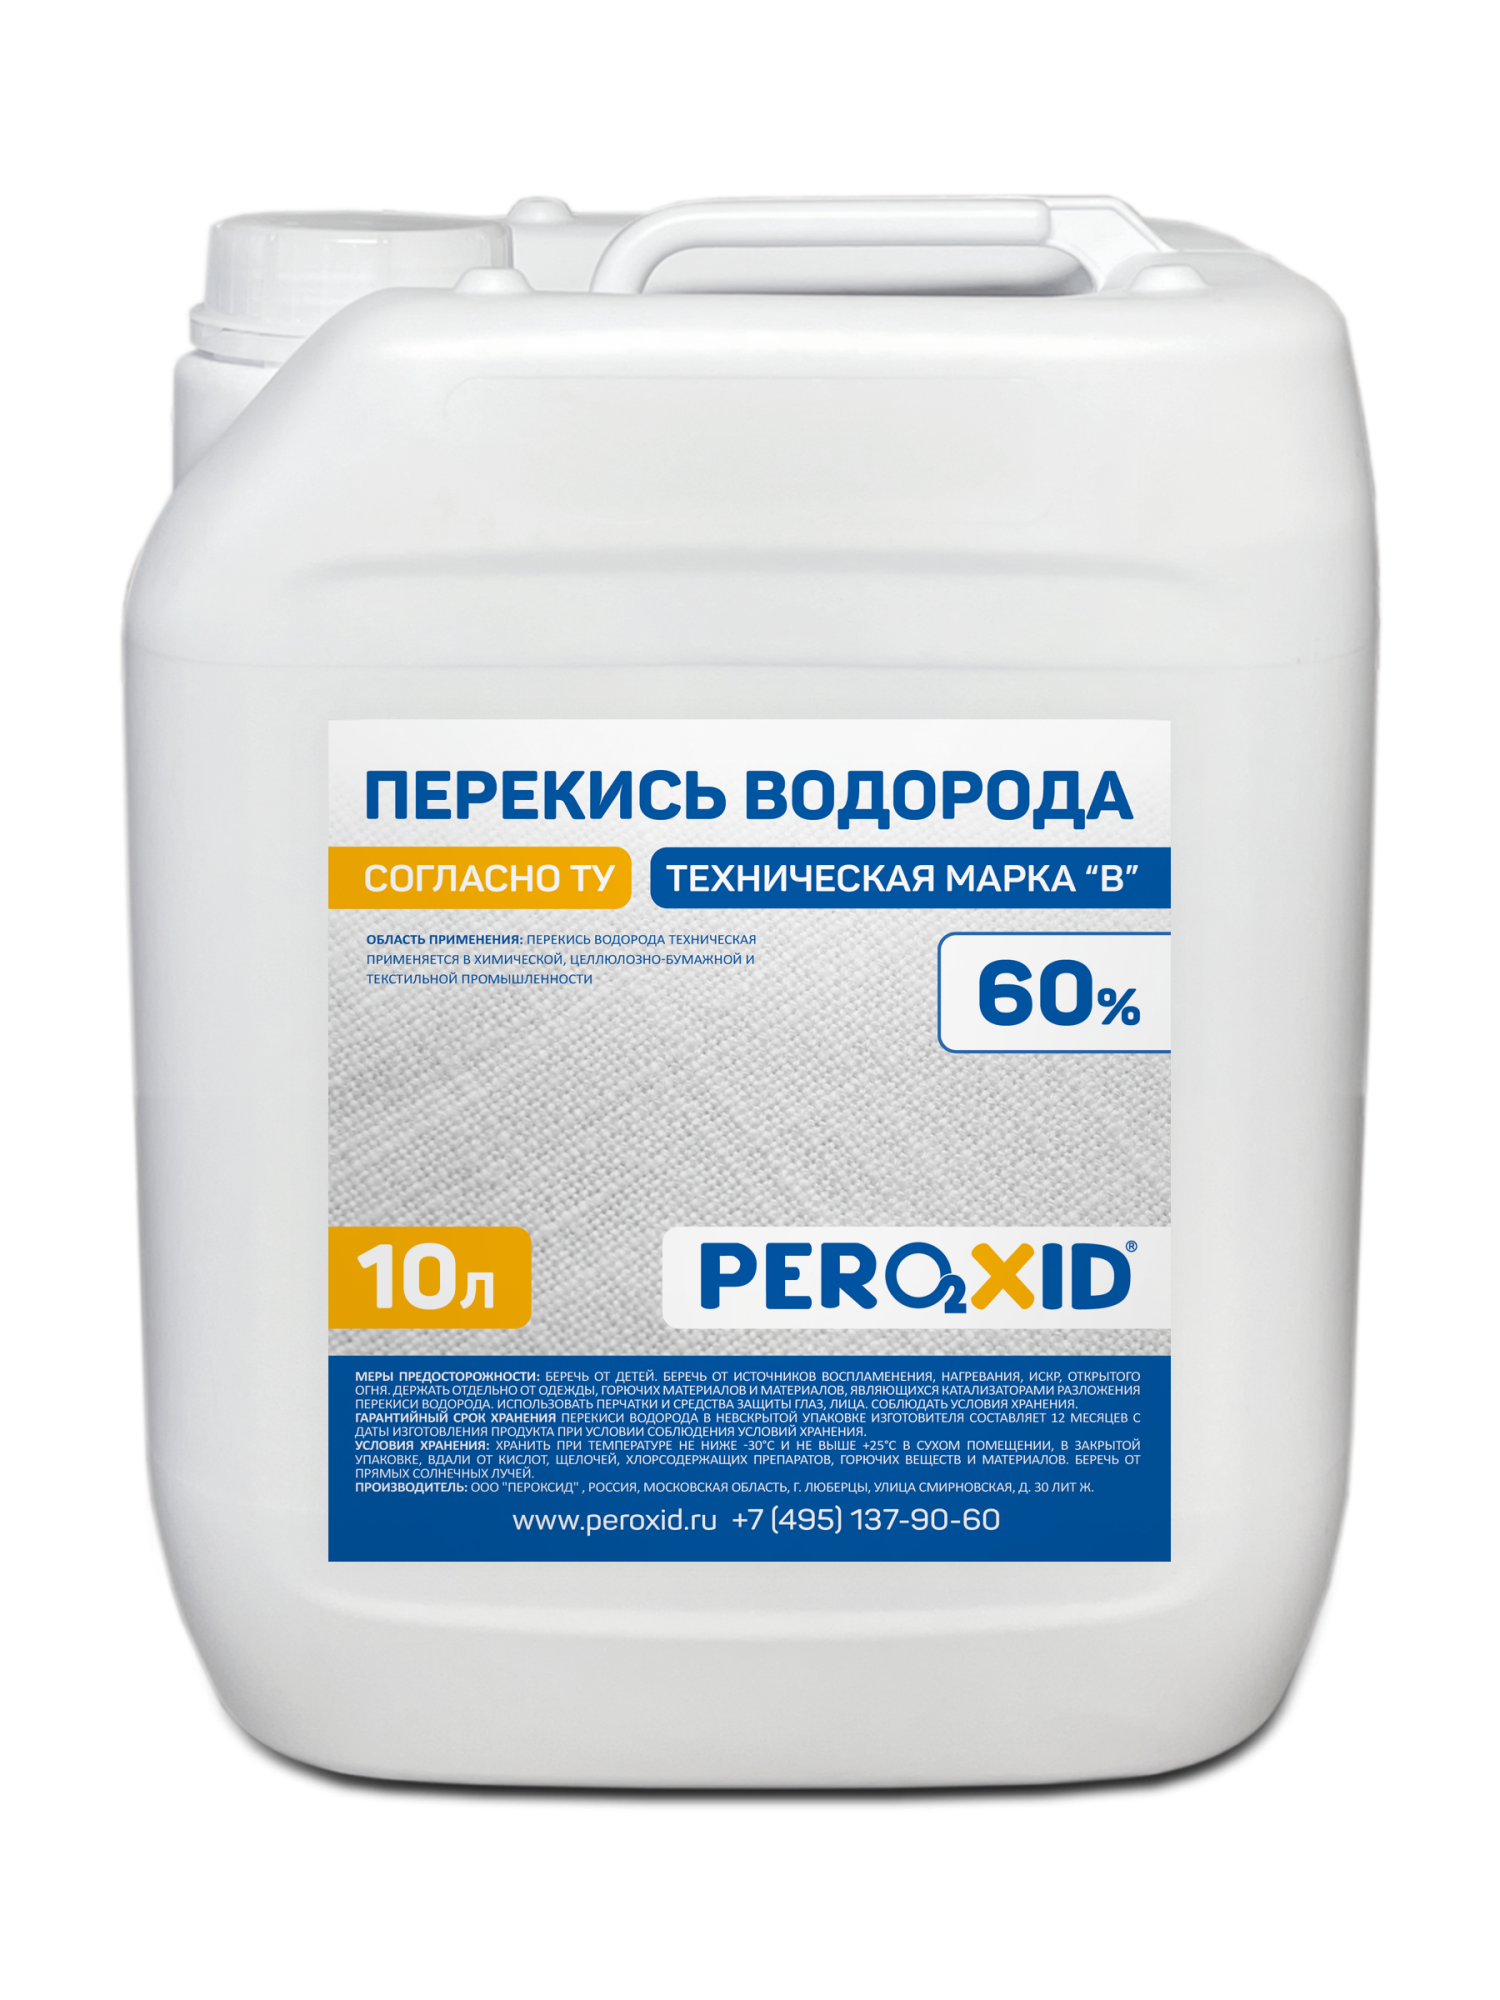 Перекись водорода техническая PEROXID 60% марка В ТУ 2123-002-25665344-2008 10 л/12 кг